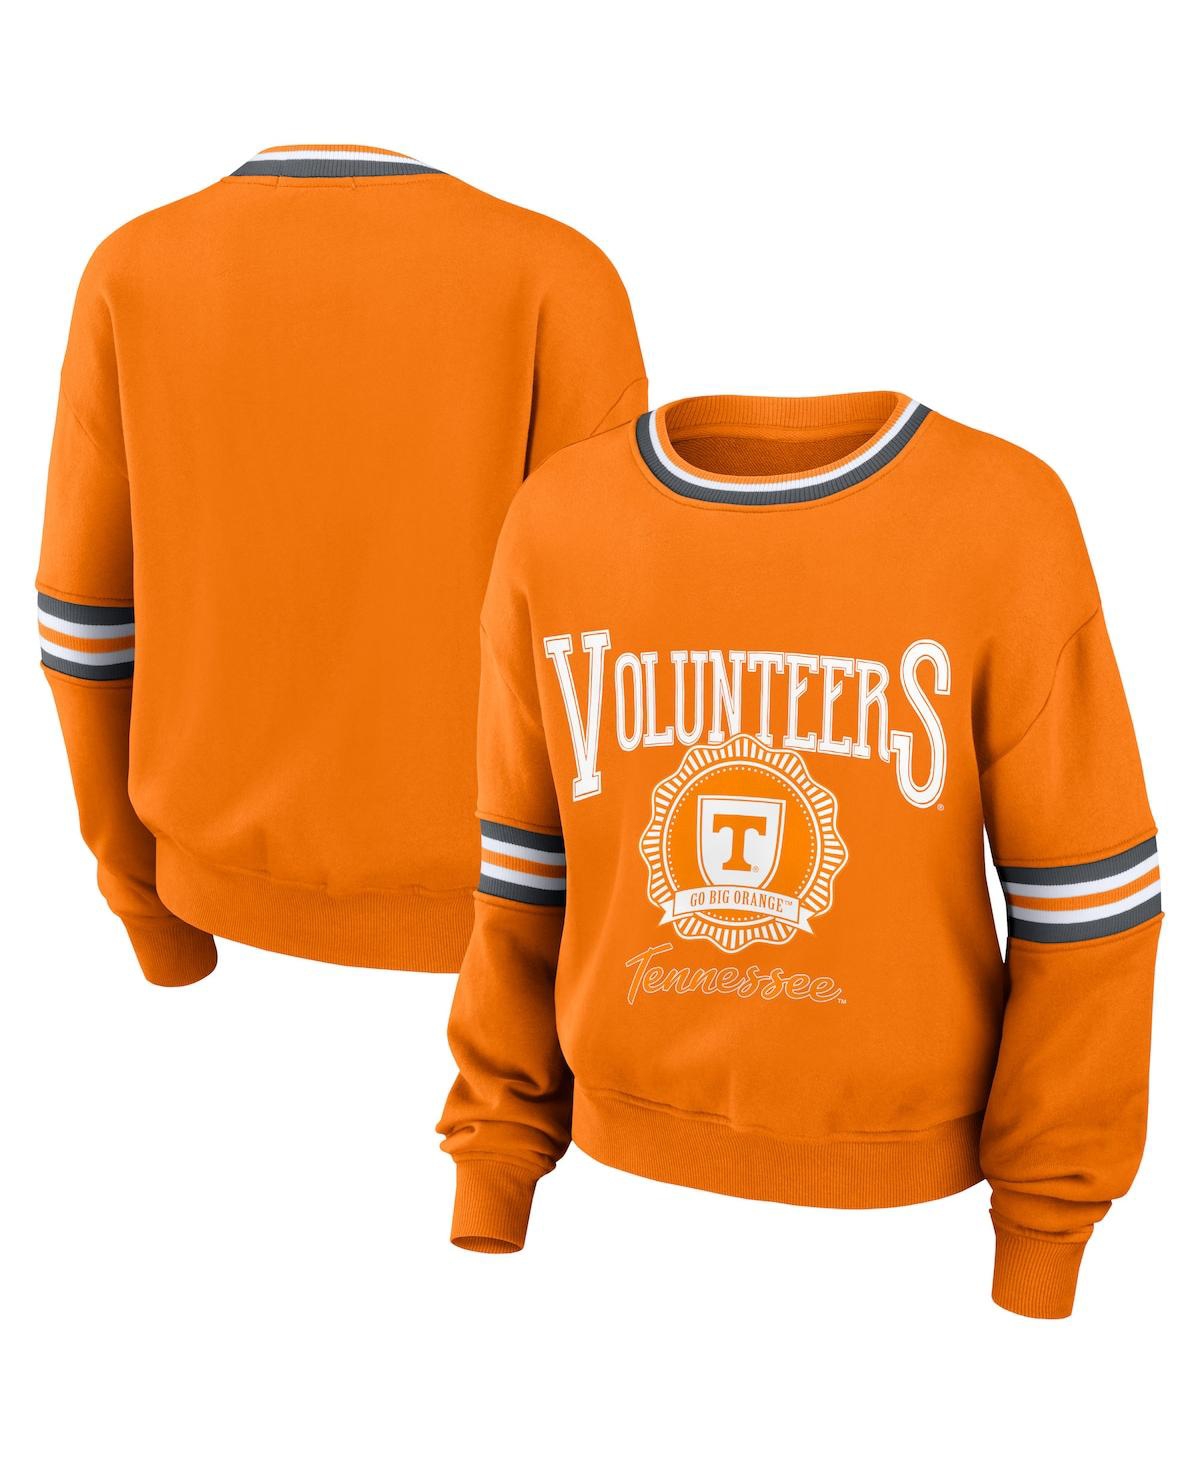 Women's Wear by Erin Andrews Orange Distressed Tennessee Volunteers Vintage-Like Pullover Sweatshirt - Orange